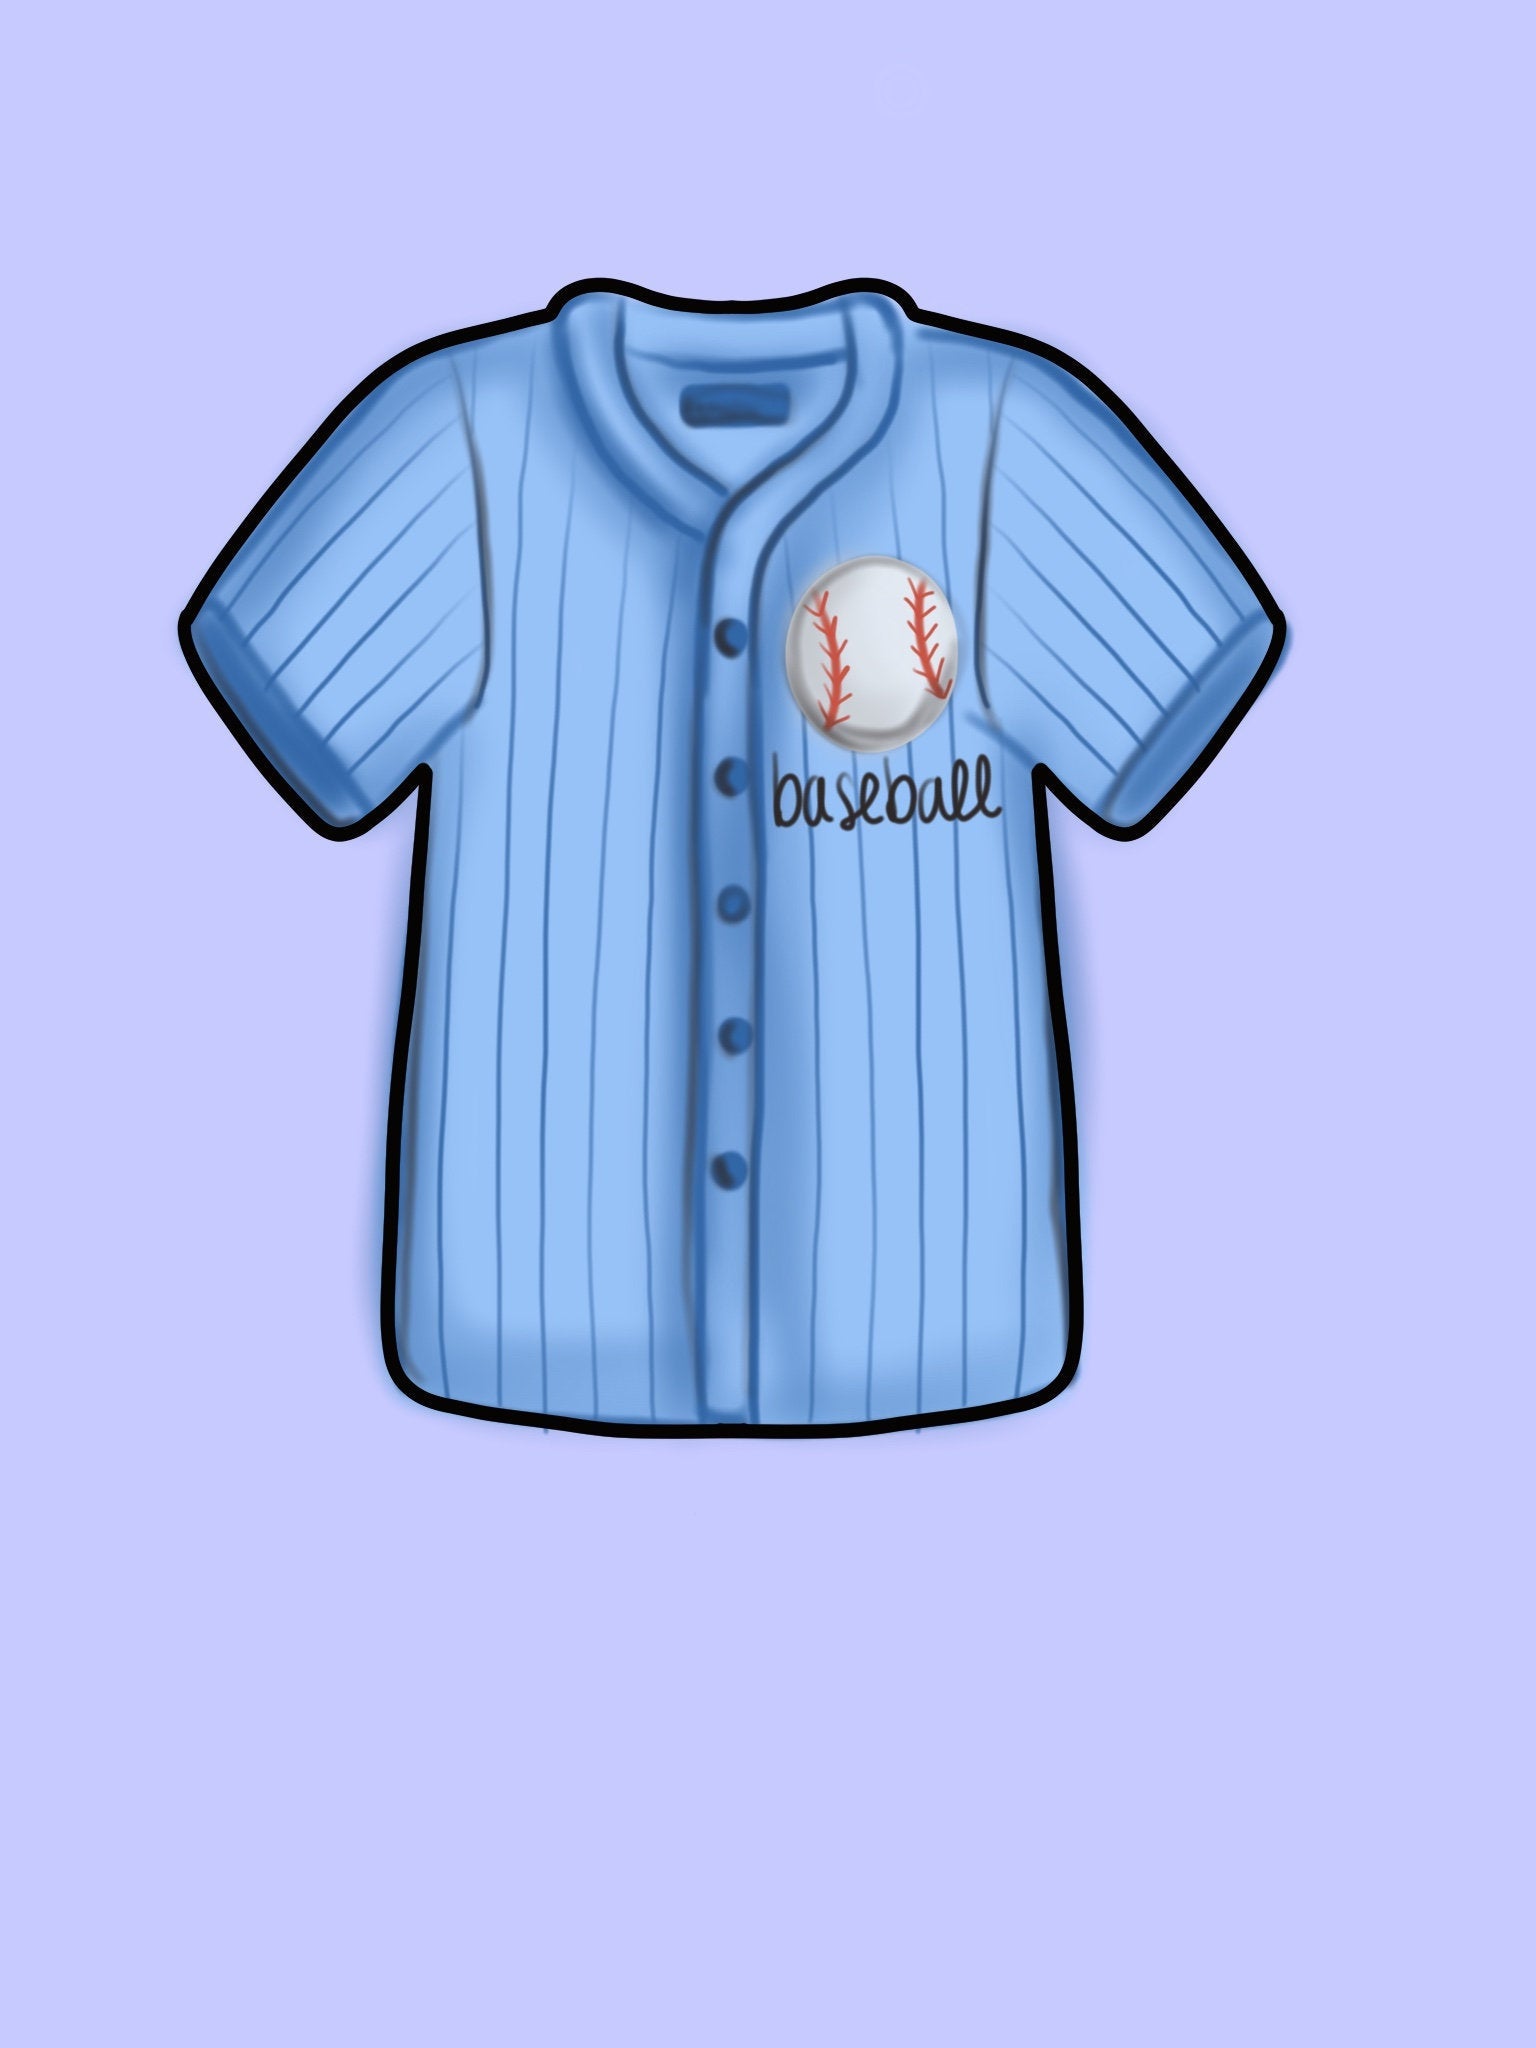 Baseball Cutter, Cute Baseball Jersey Shirt Cookie Cutter, Sports Cookie Cutter